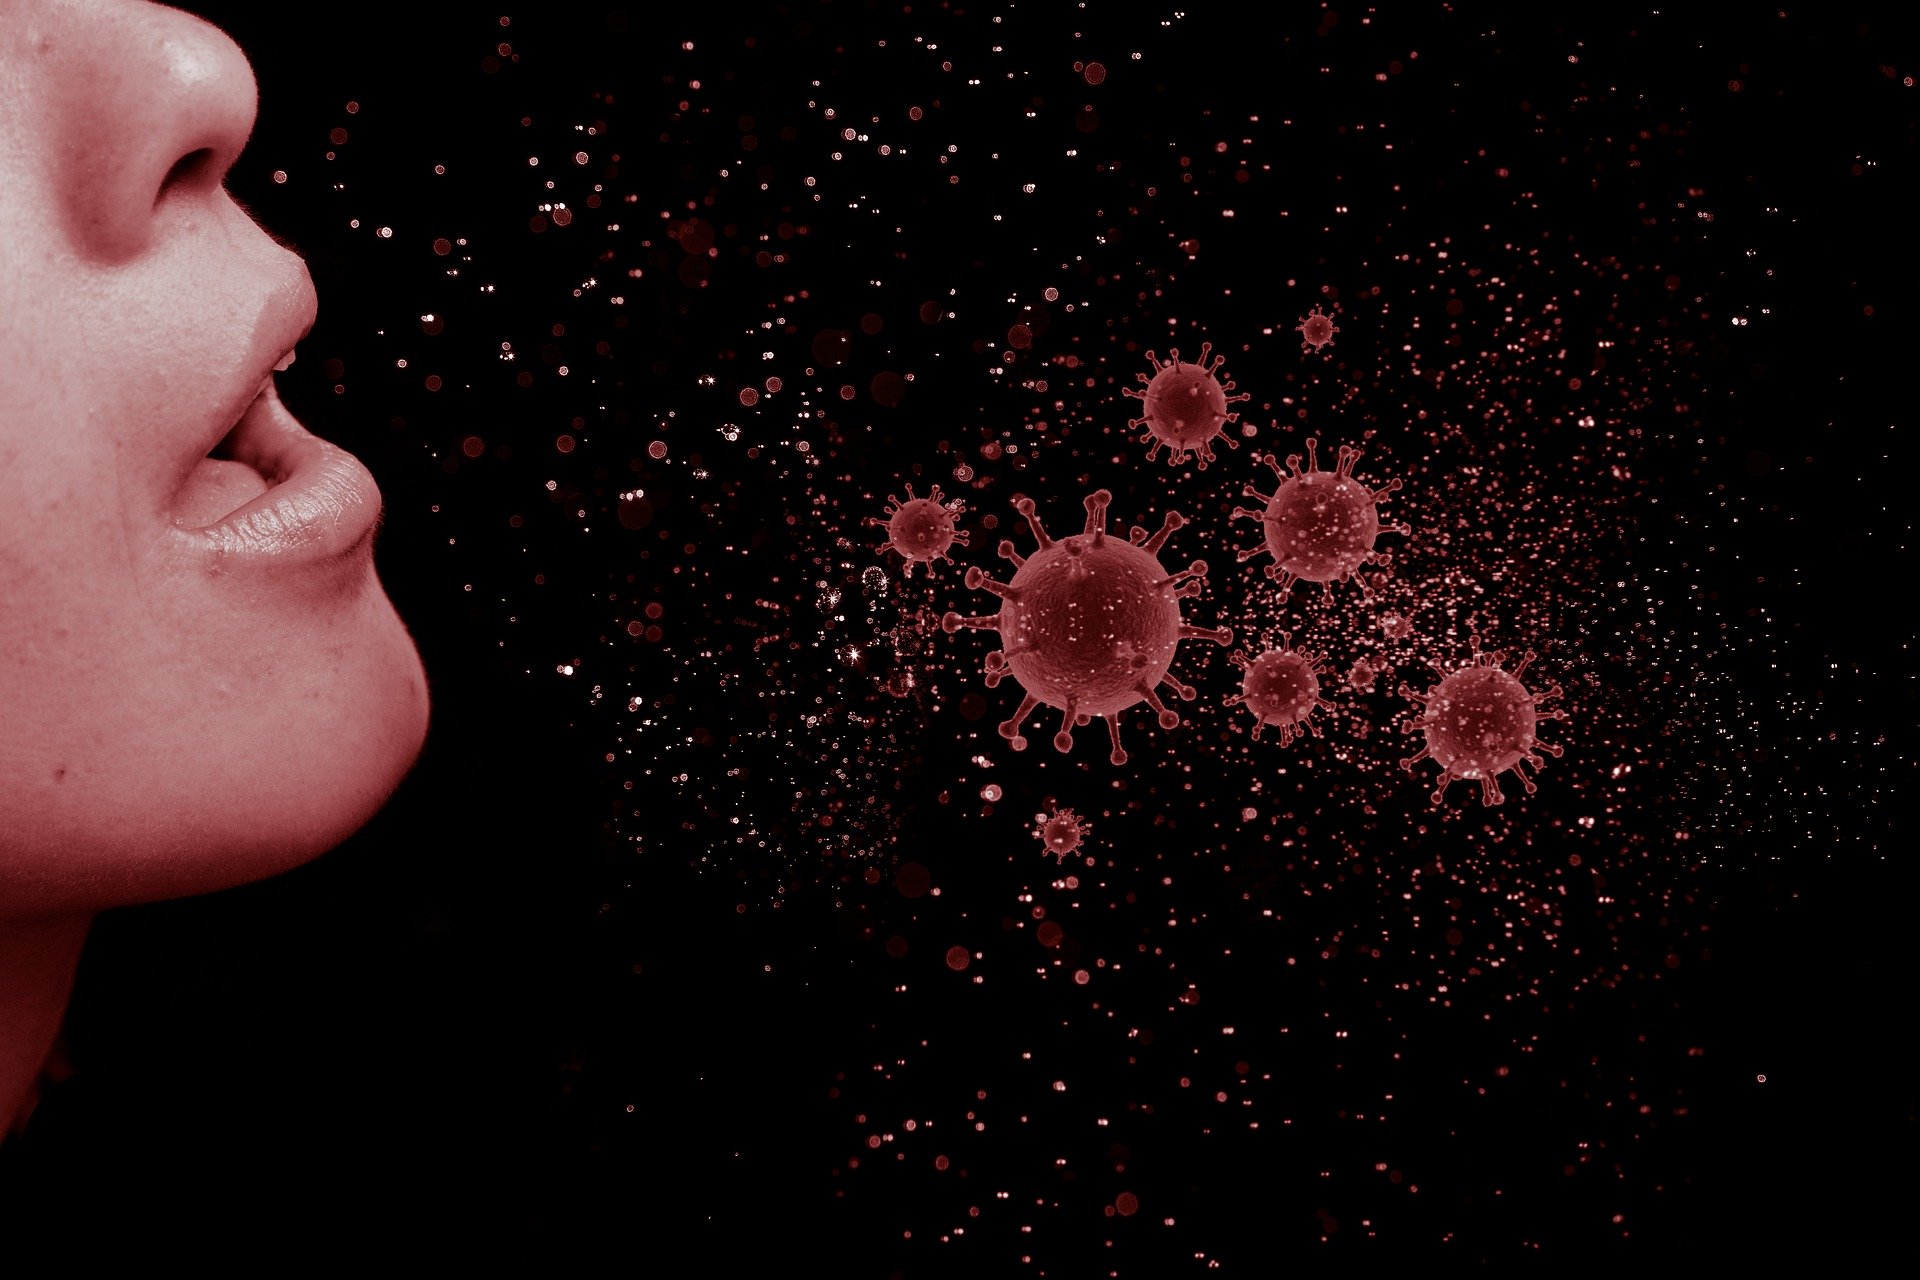 Estudio revela que en espacio bien ventilados el virus permanece menos tiempo en el ambiente. (Foto Prensa Libre: Pixabay)